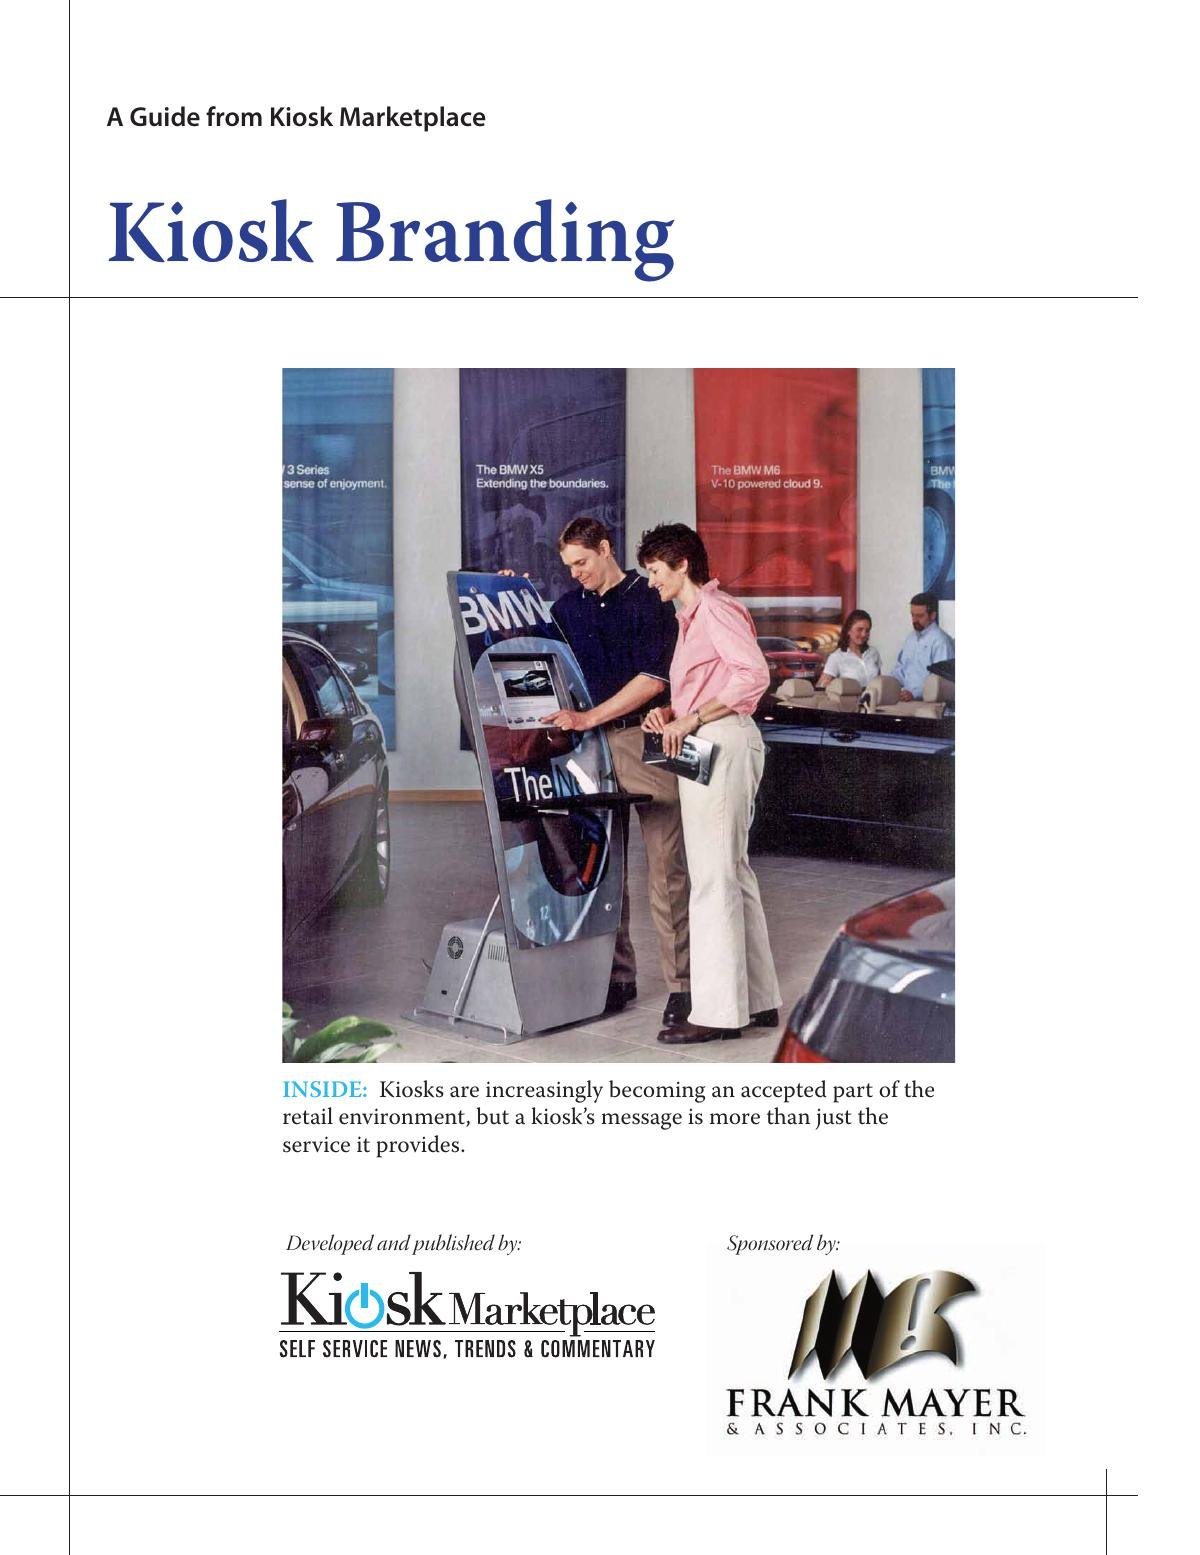 Kiosk Branding Guide